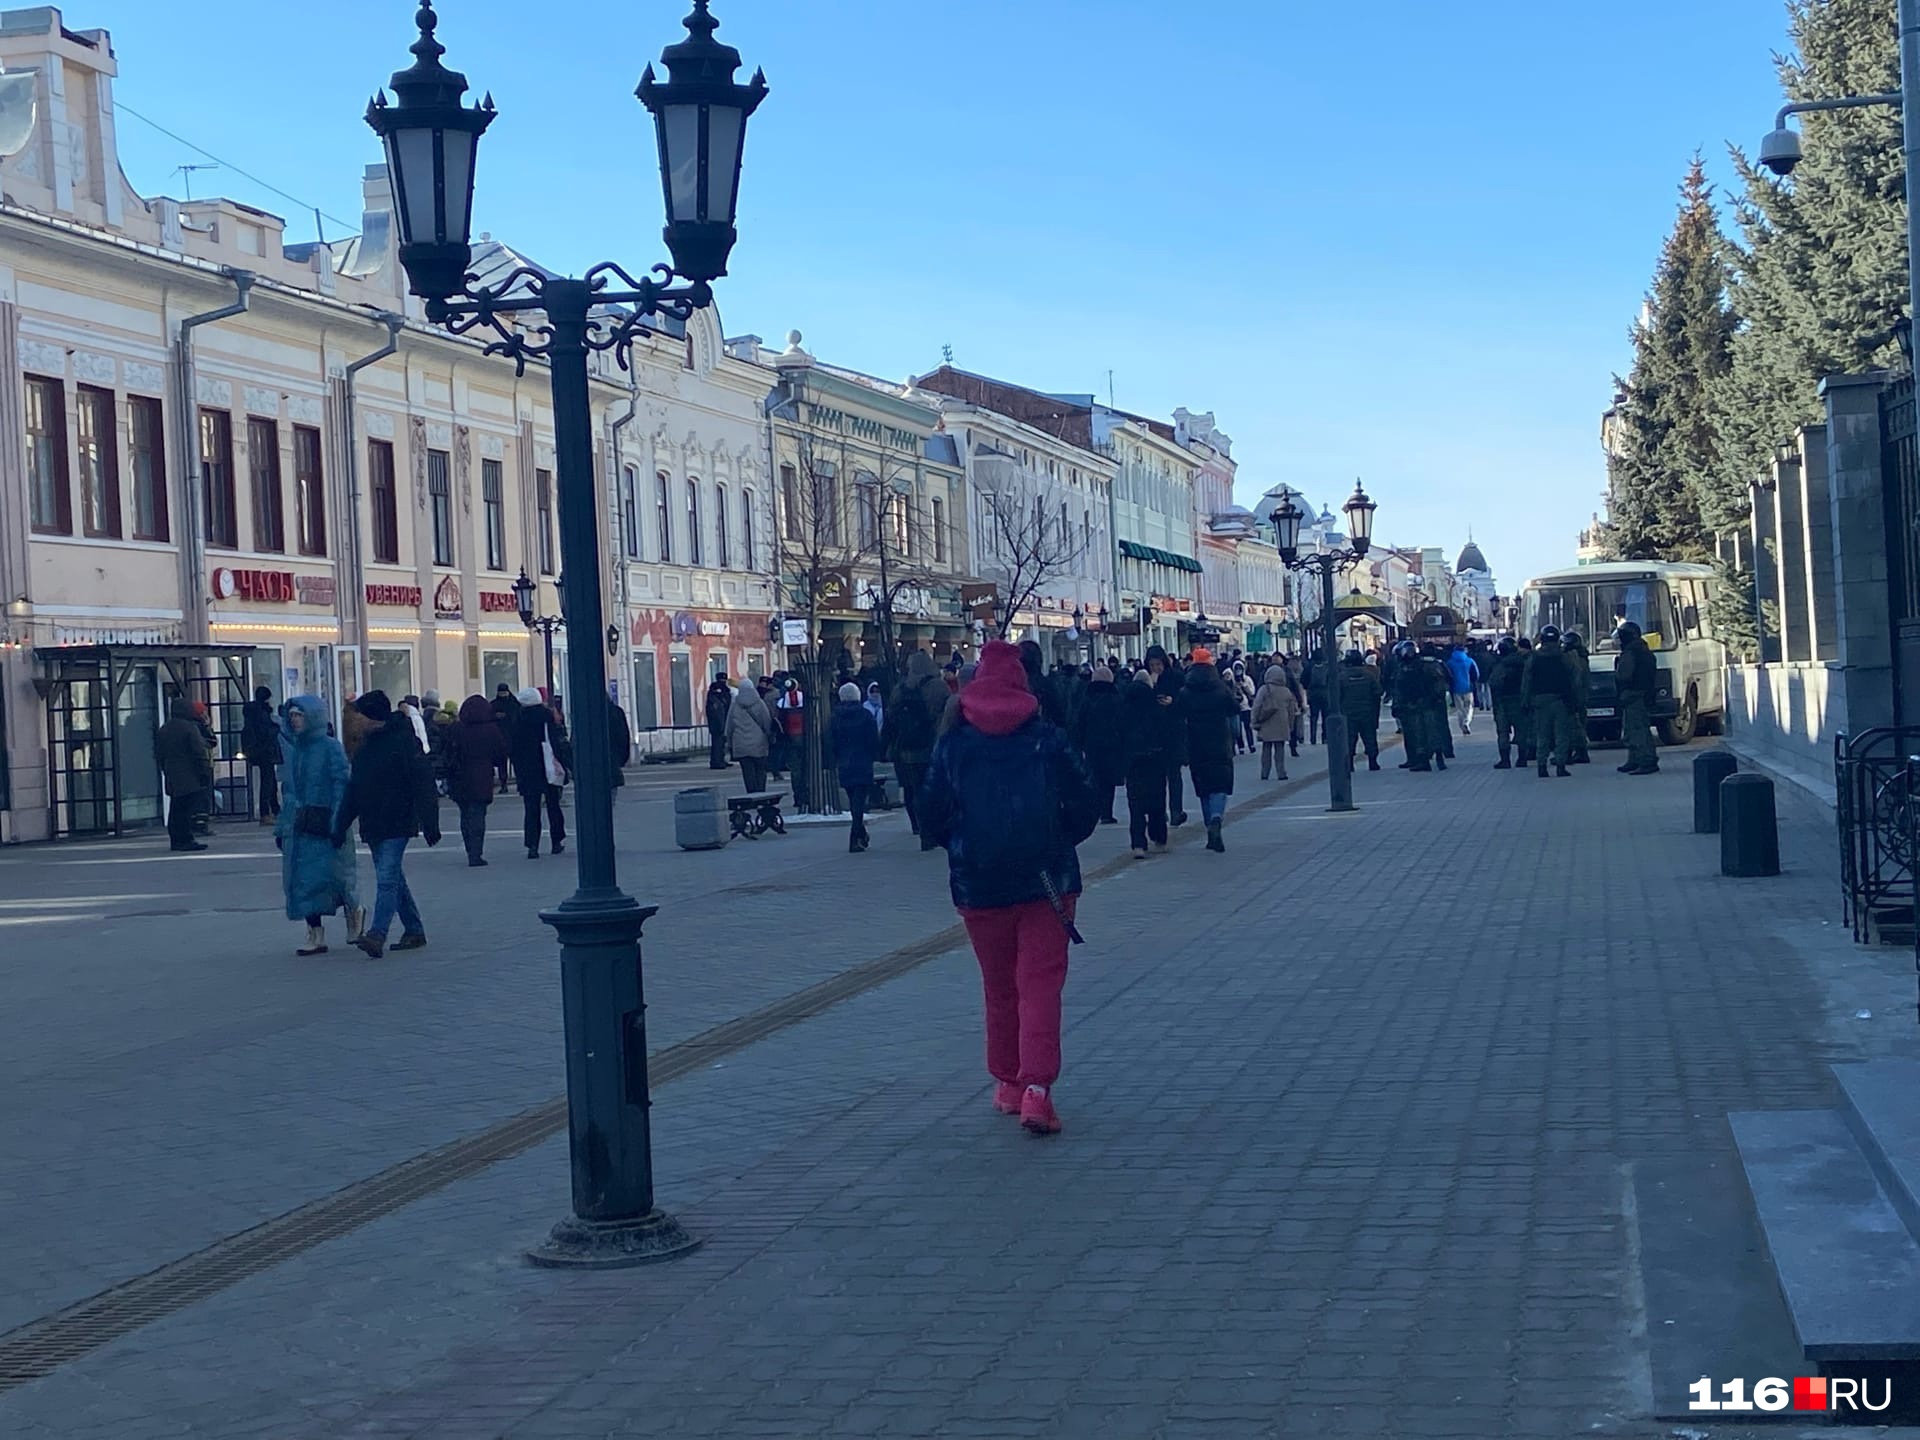 «Дизайн застрял в 90-х»: казанский урбанист сравнил главную улицу Казани с нижегородской Покровкой